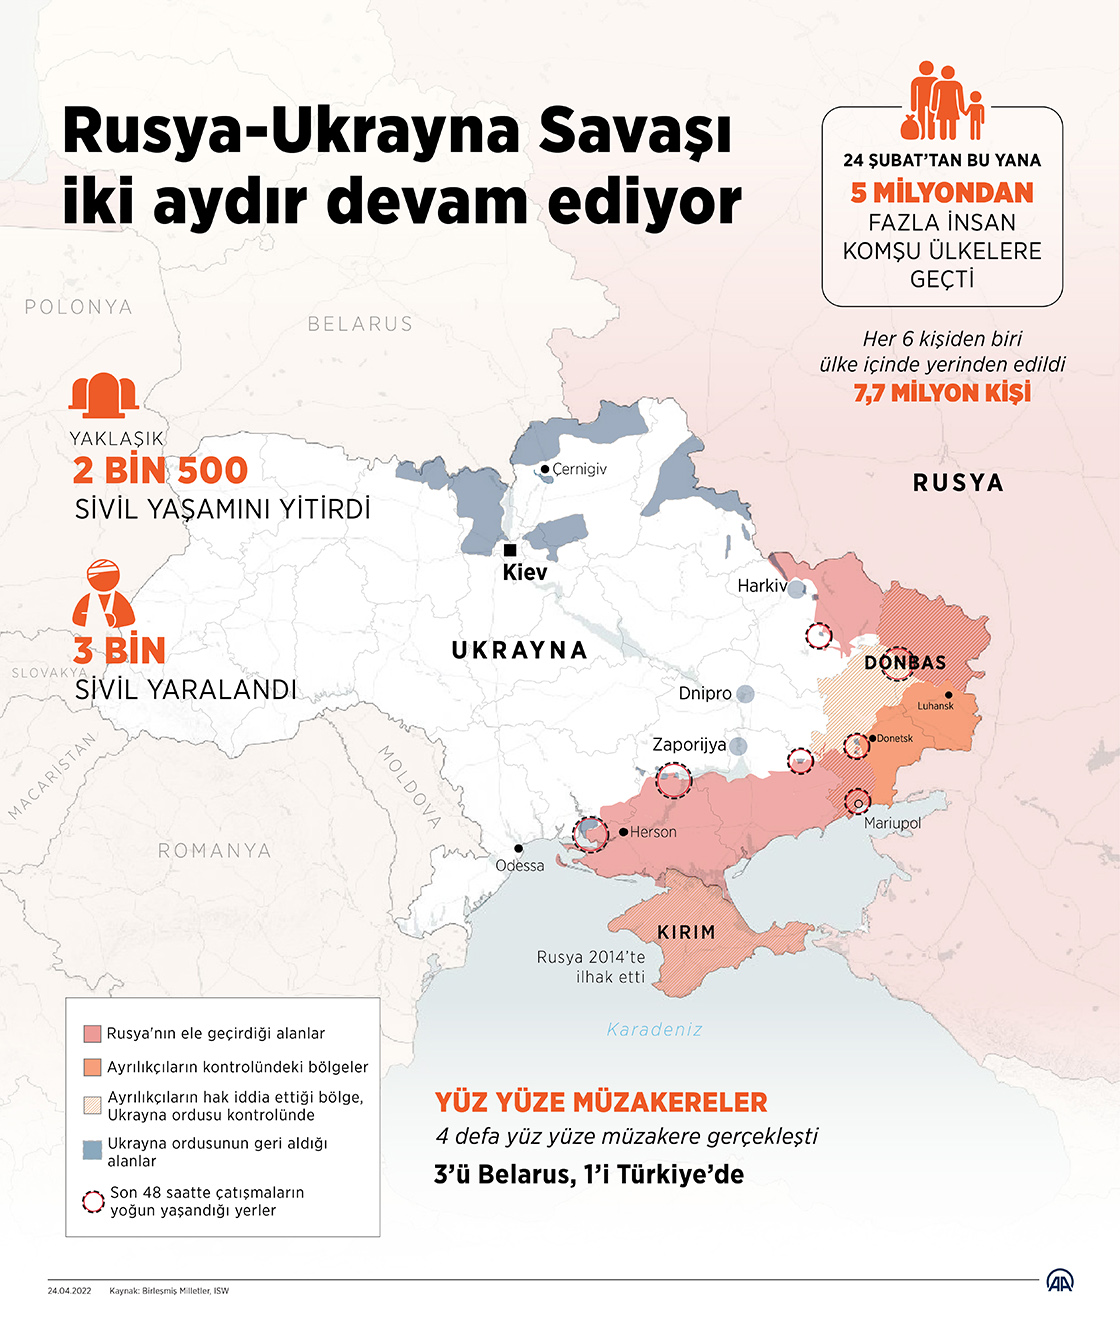 Rusya'nın Ukrayna'ya karşı başlattığı savaş iki aydır devam ediyor